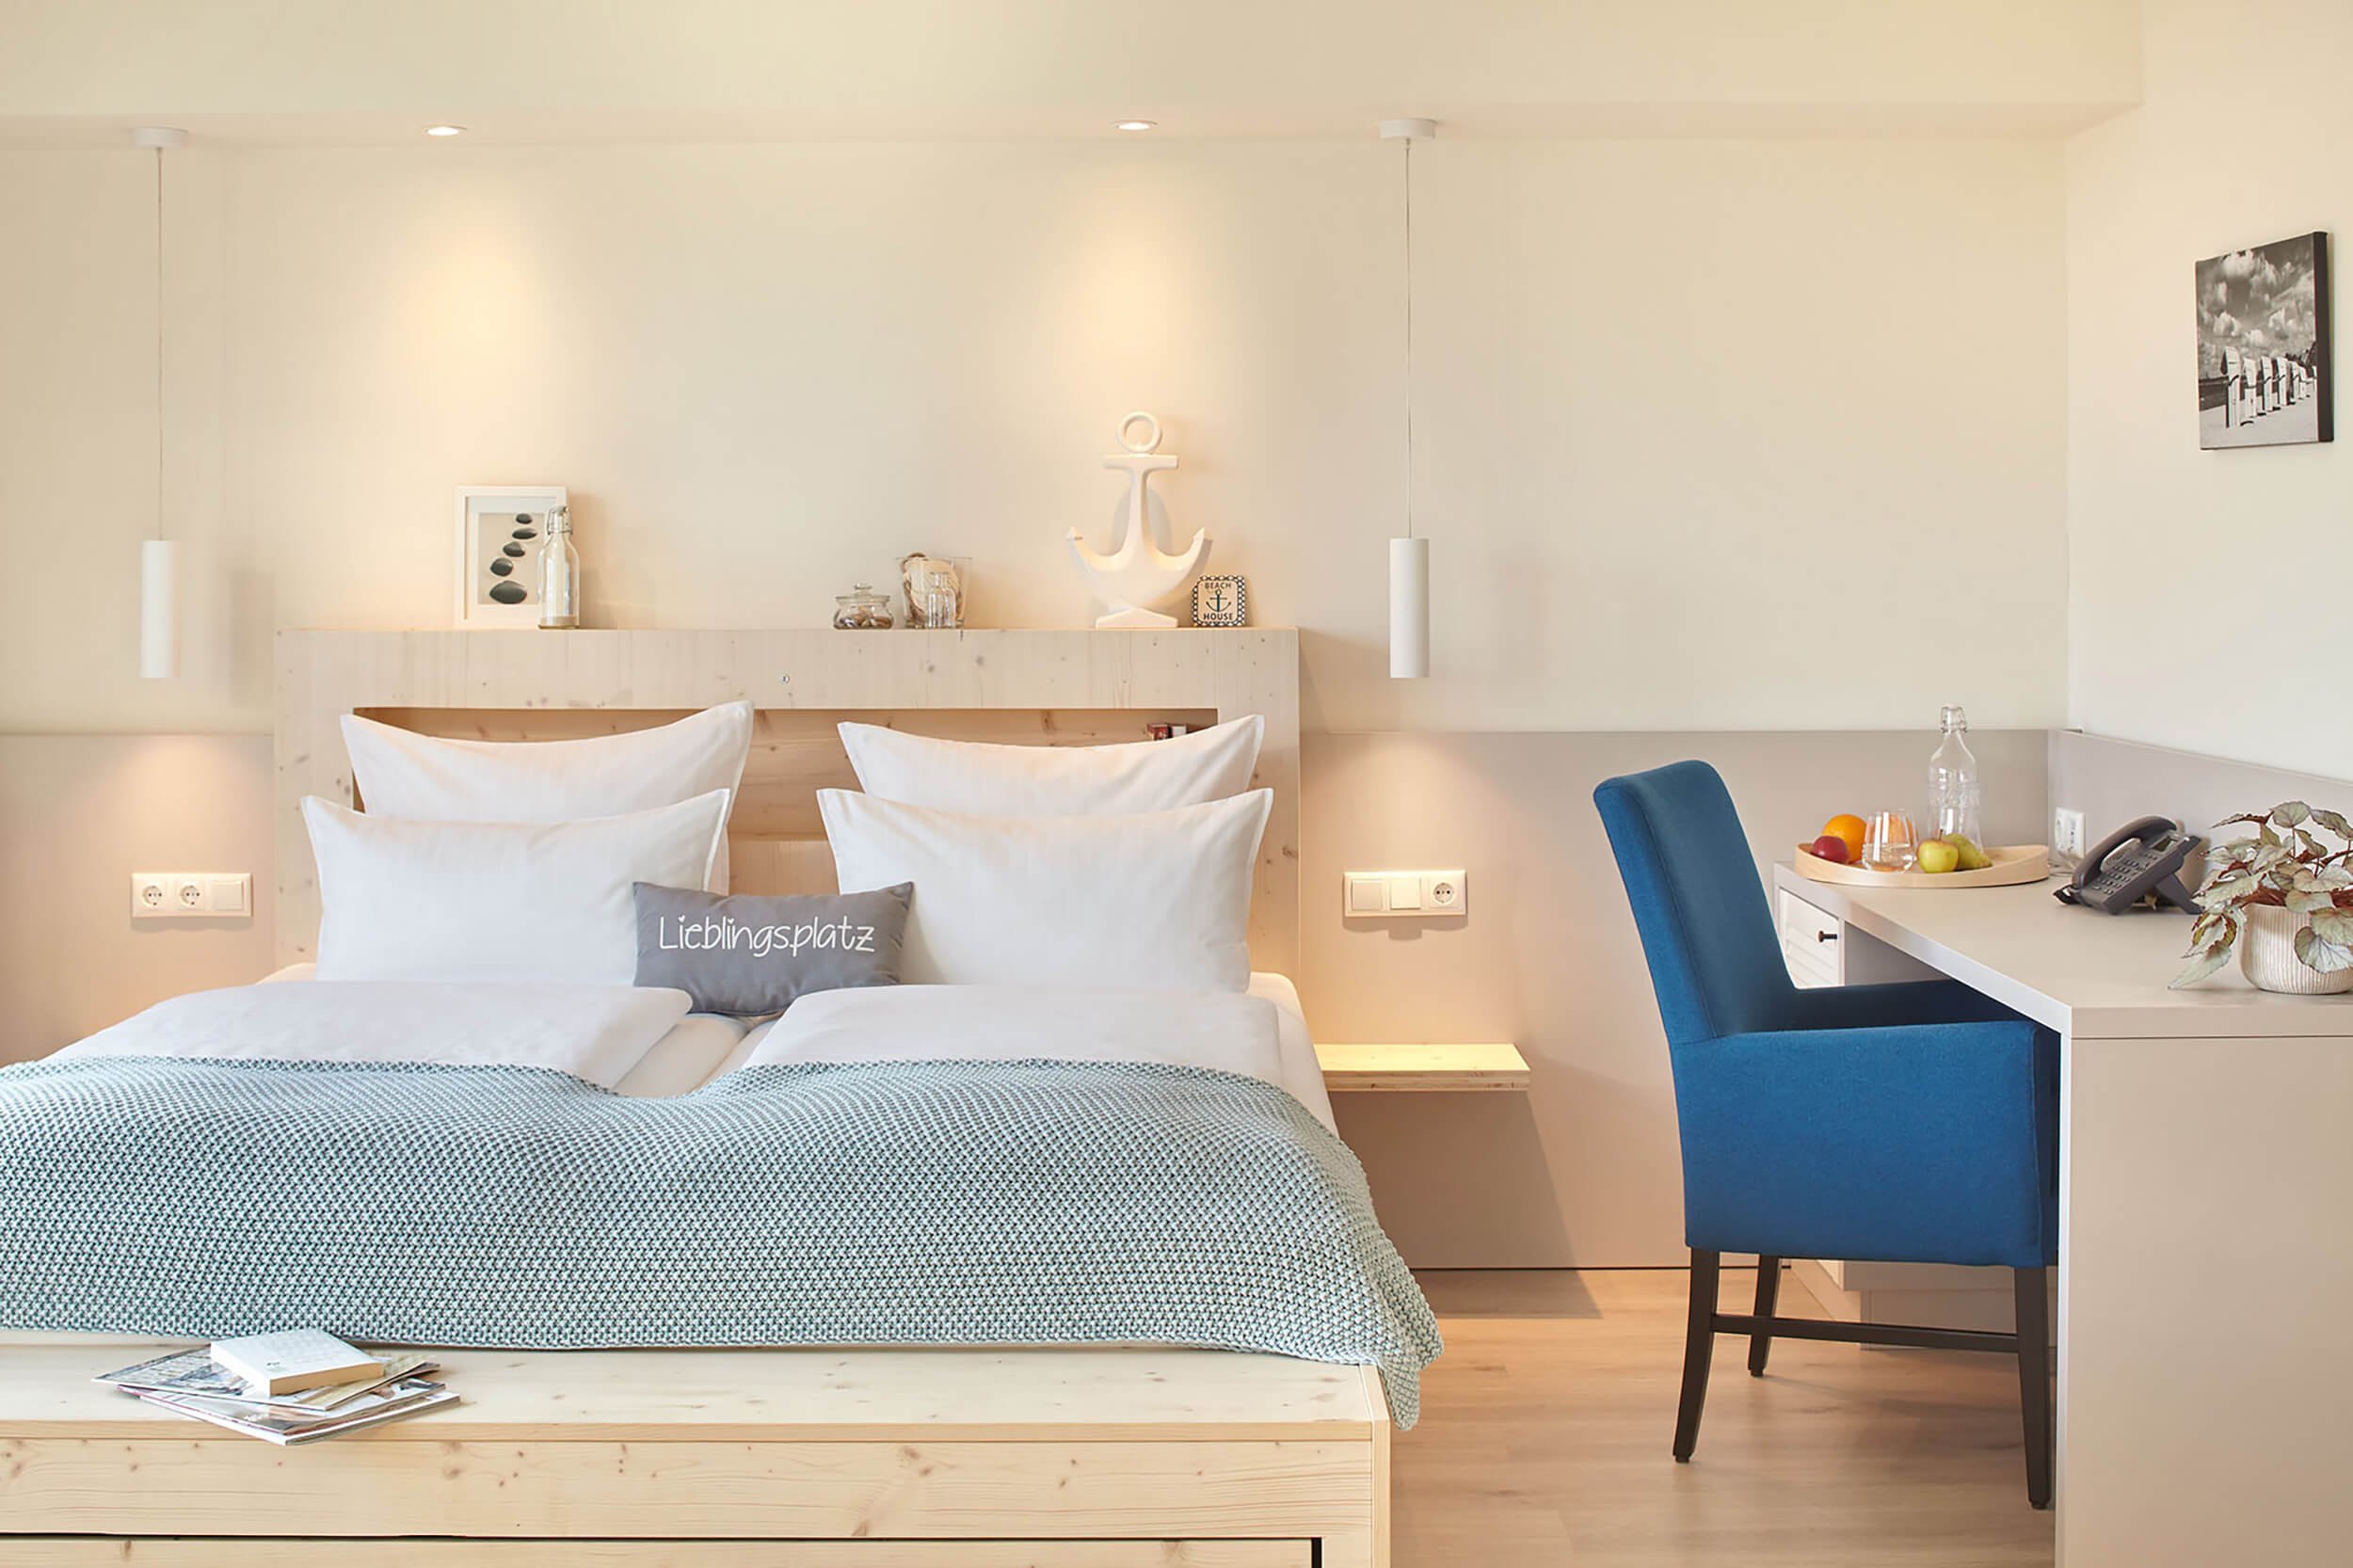 Hotel Strandkind Blick in den hellen, schönen Schlafbereich mit Bett und Schreibtisch